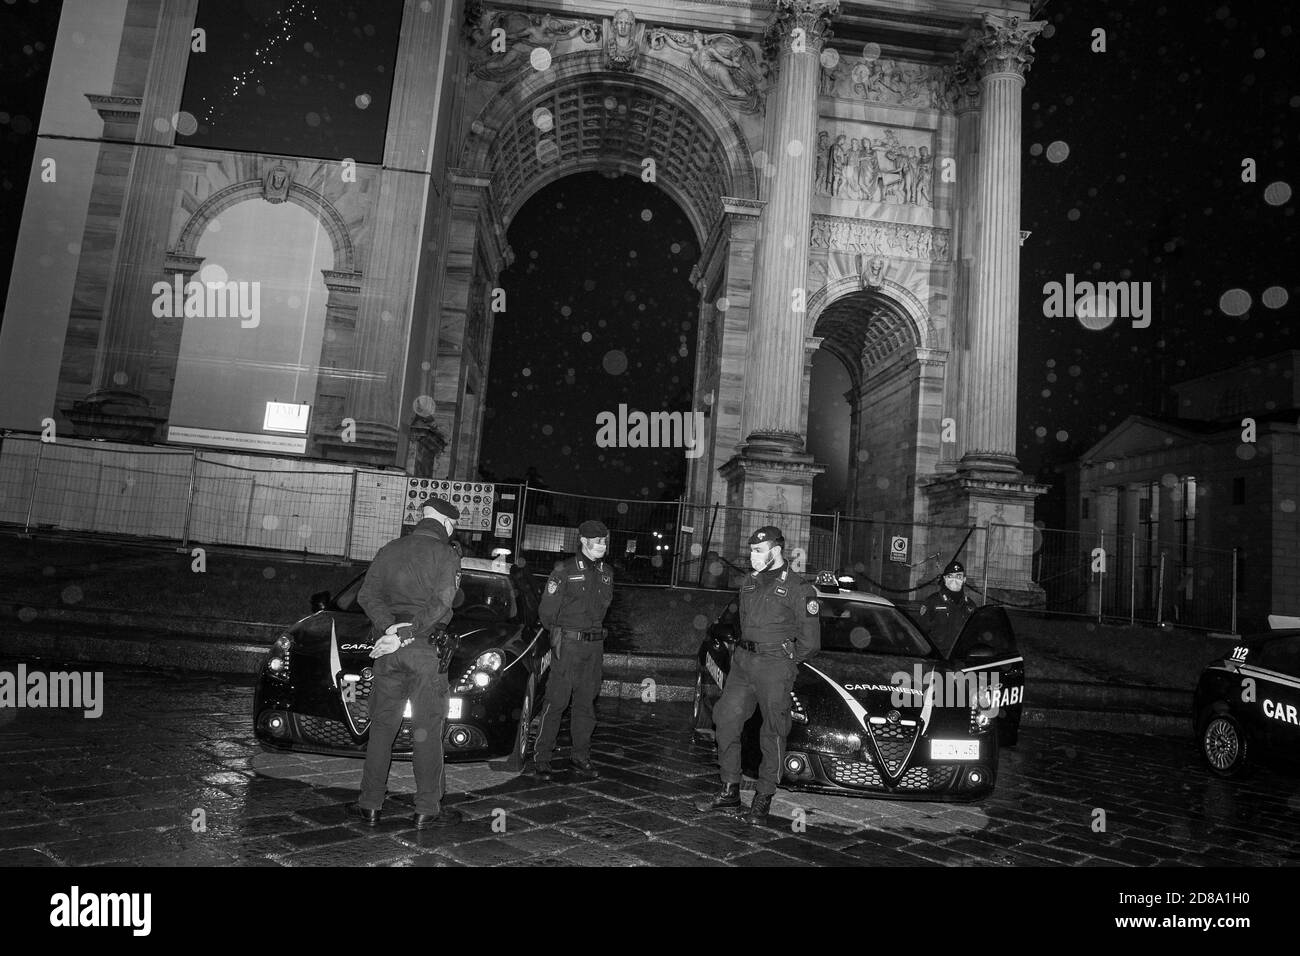 Italie, Milan, première nuit de couvre-feu Banque D'Images